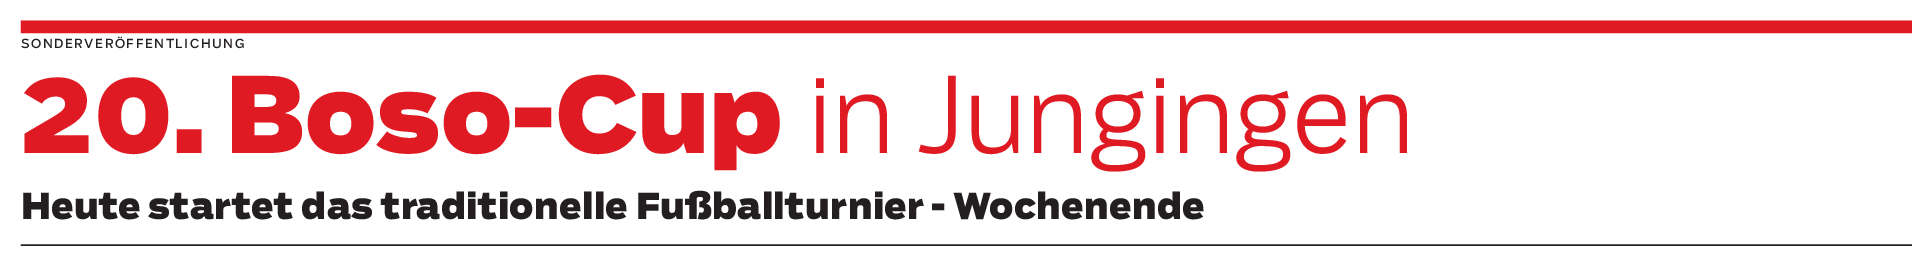 Turnierwochenende in Jungingen: Auf neuem Rasen